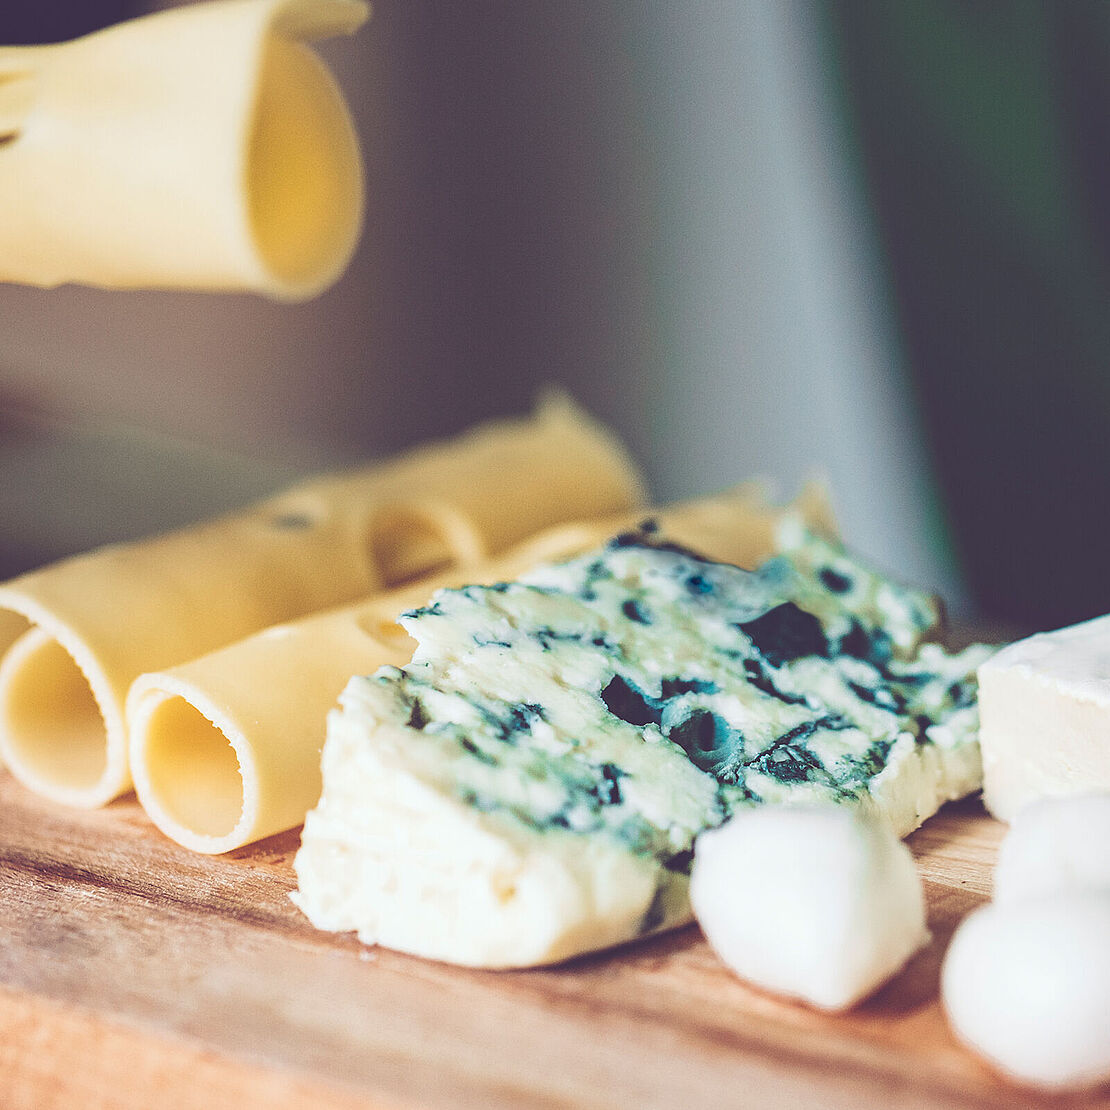 Käse & Gesundheit: Käse liefert viel Kalzium für den Knochenbau und ist auch für deine Zähne gut